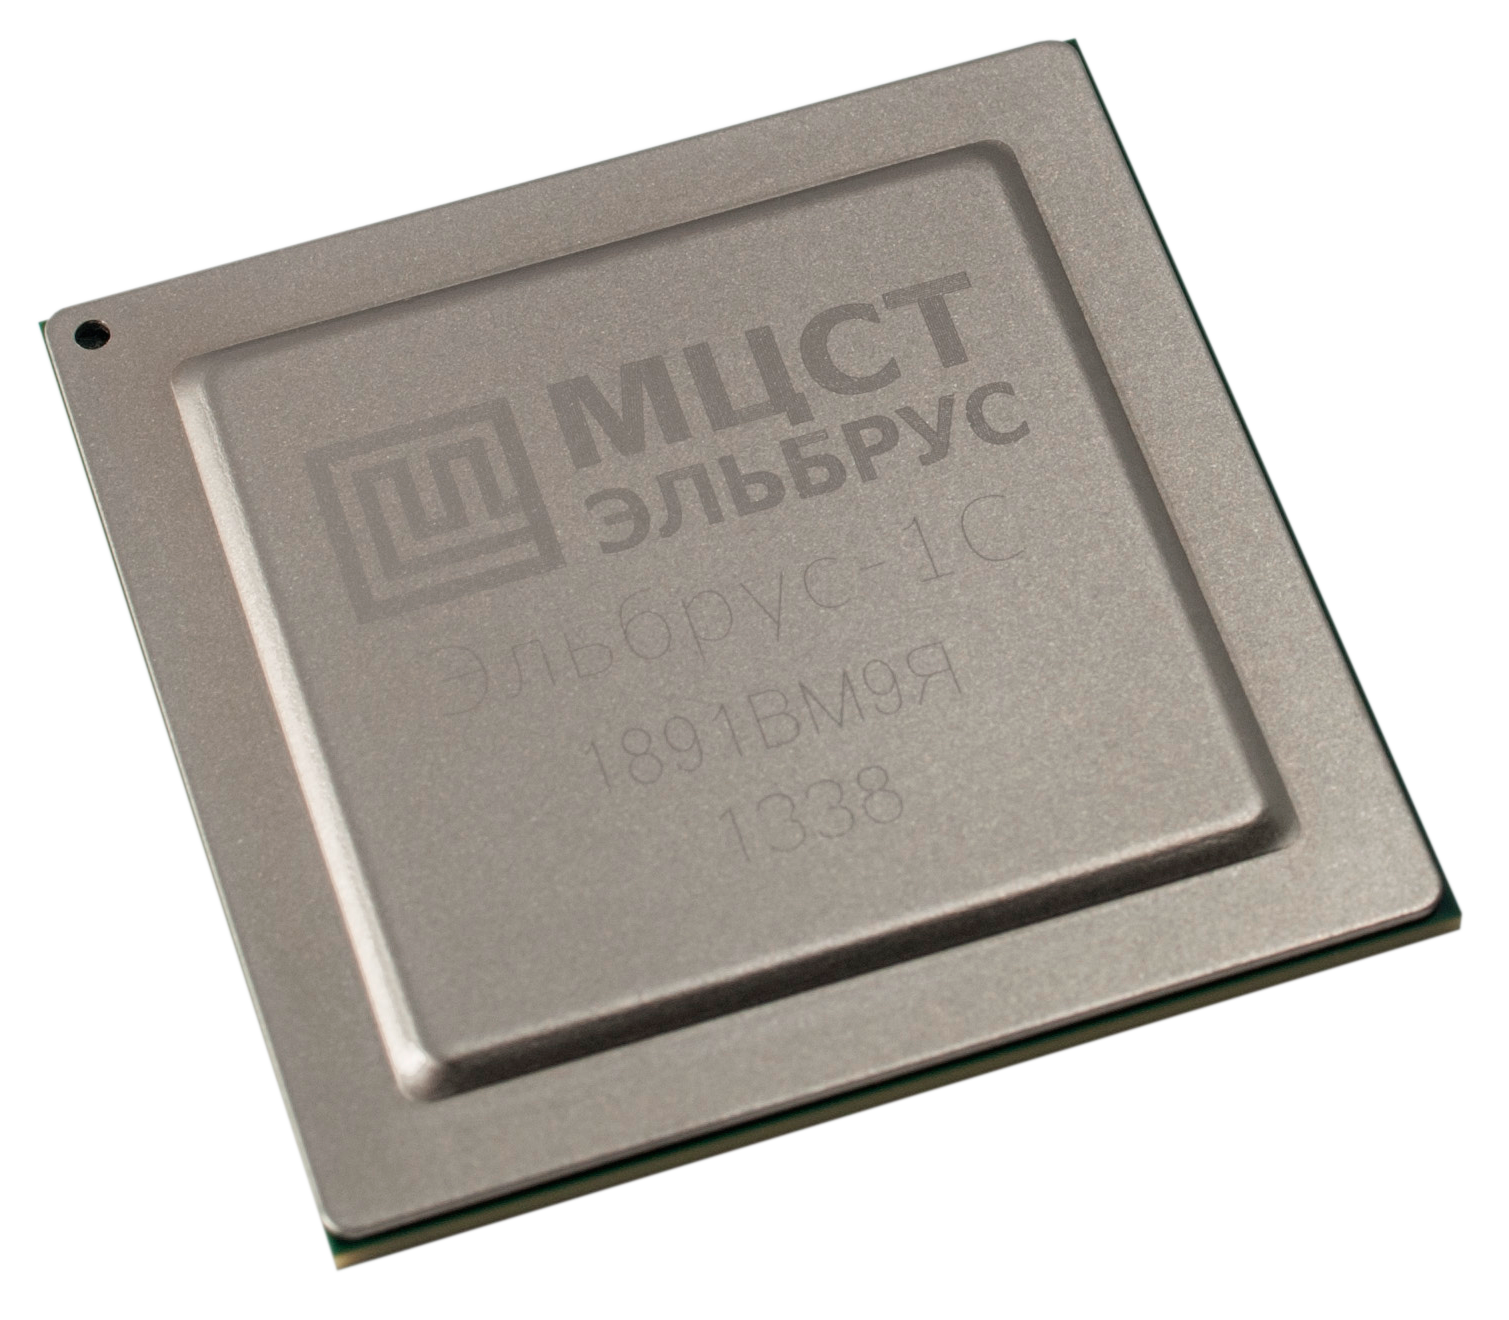 МЦСТ будет выпускать материнскую плату и операционную систему для процессора «Эльбрус-2СМ» - 2